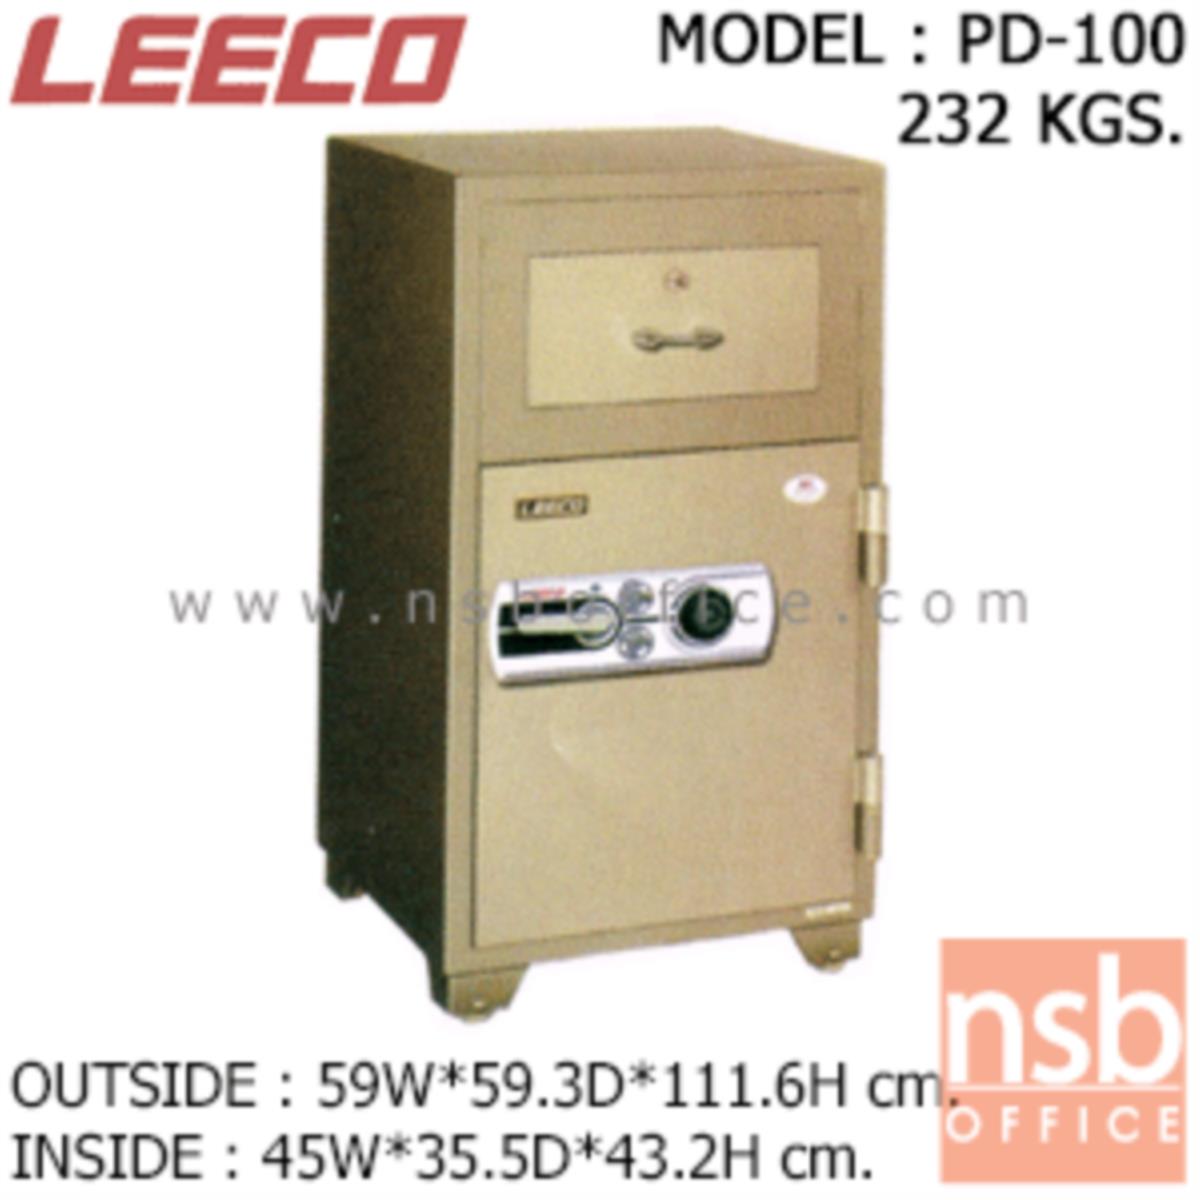 ตู้เซฟแคชเชียร์ 232 กก. ลีโก้ รุ่น LEECO-PD-100 มี 2 กุญแจ 1 รหัส (เปลี่ยนรหัสได้)   